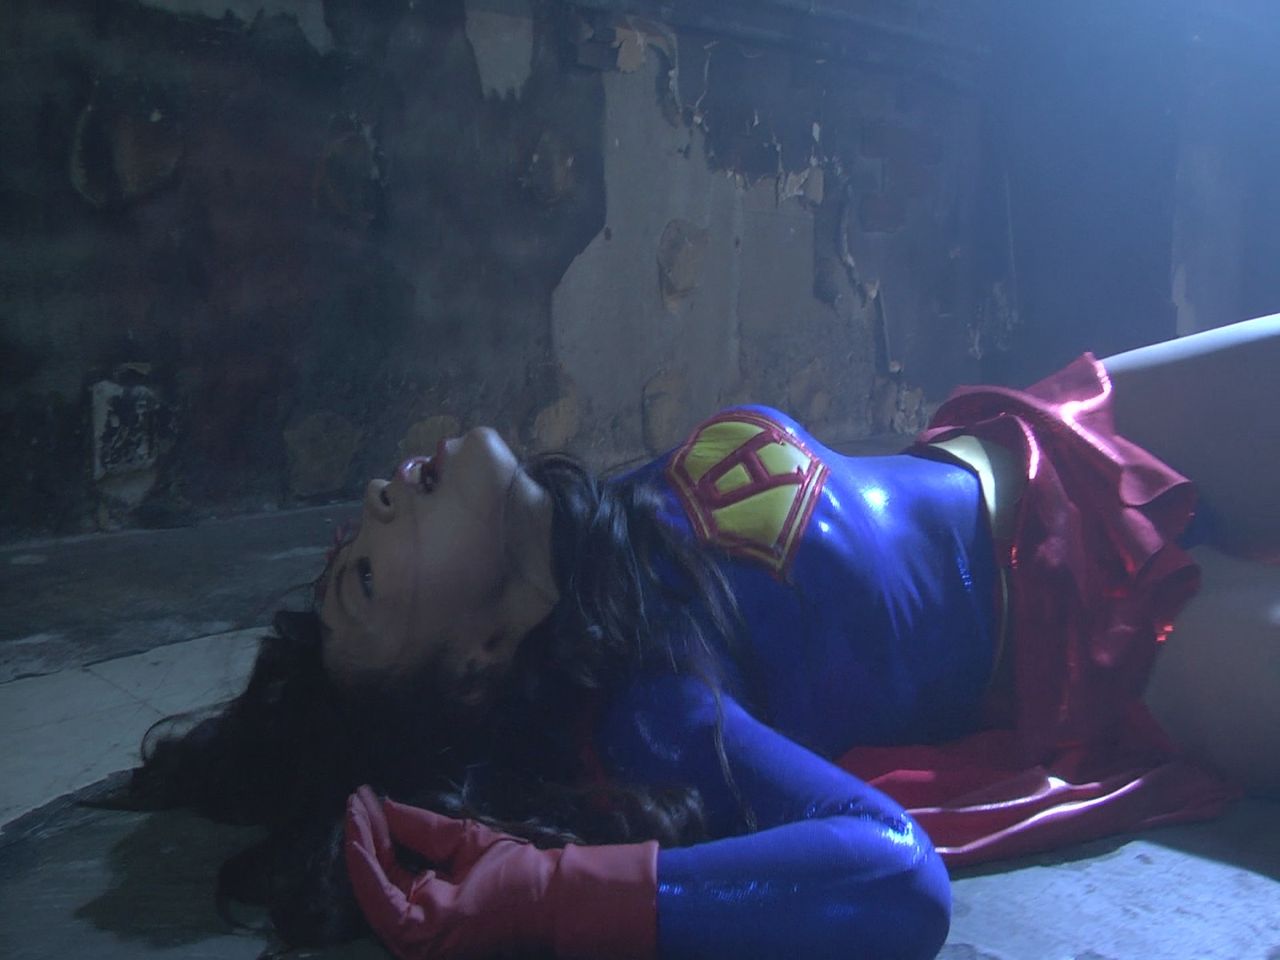 Supergirl in peril scene. 